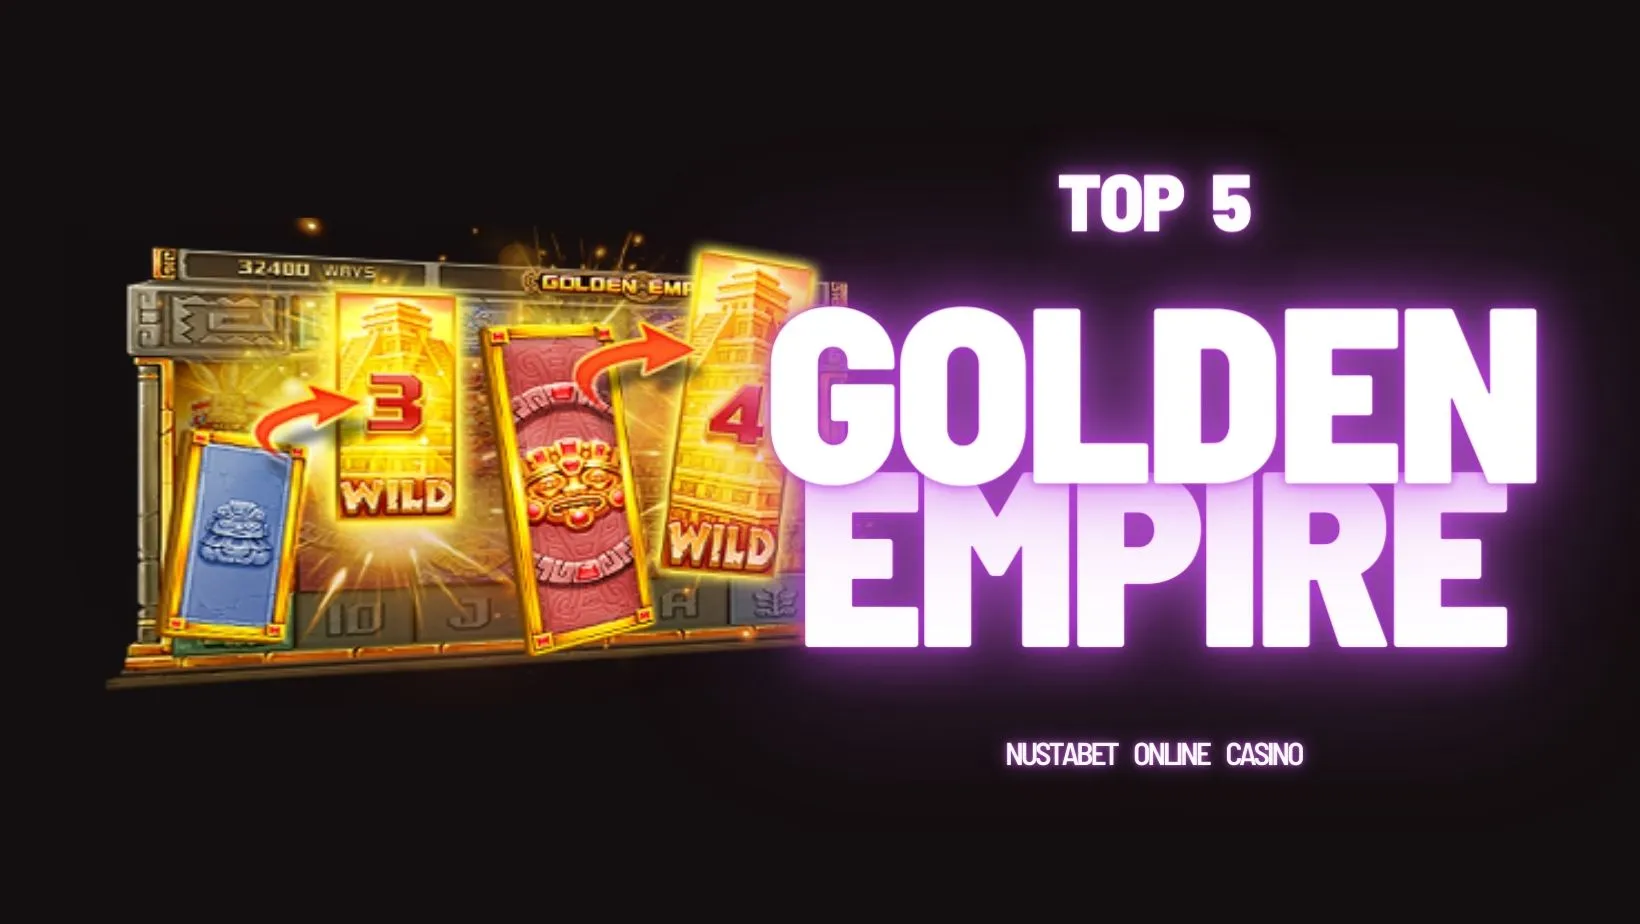 Golden Empire | Jili Slot Games | Slot Online | Nustabet Online Casino